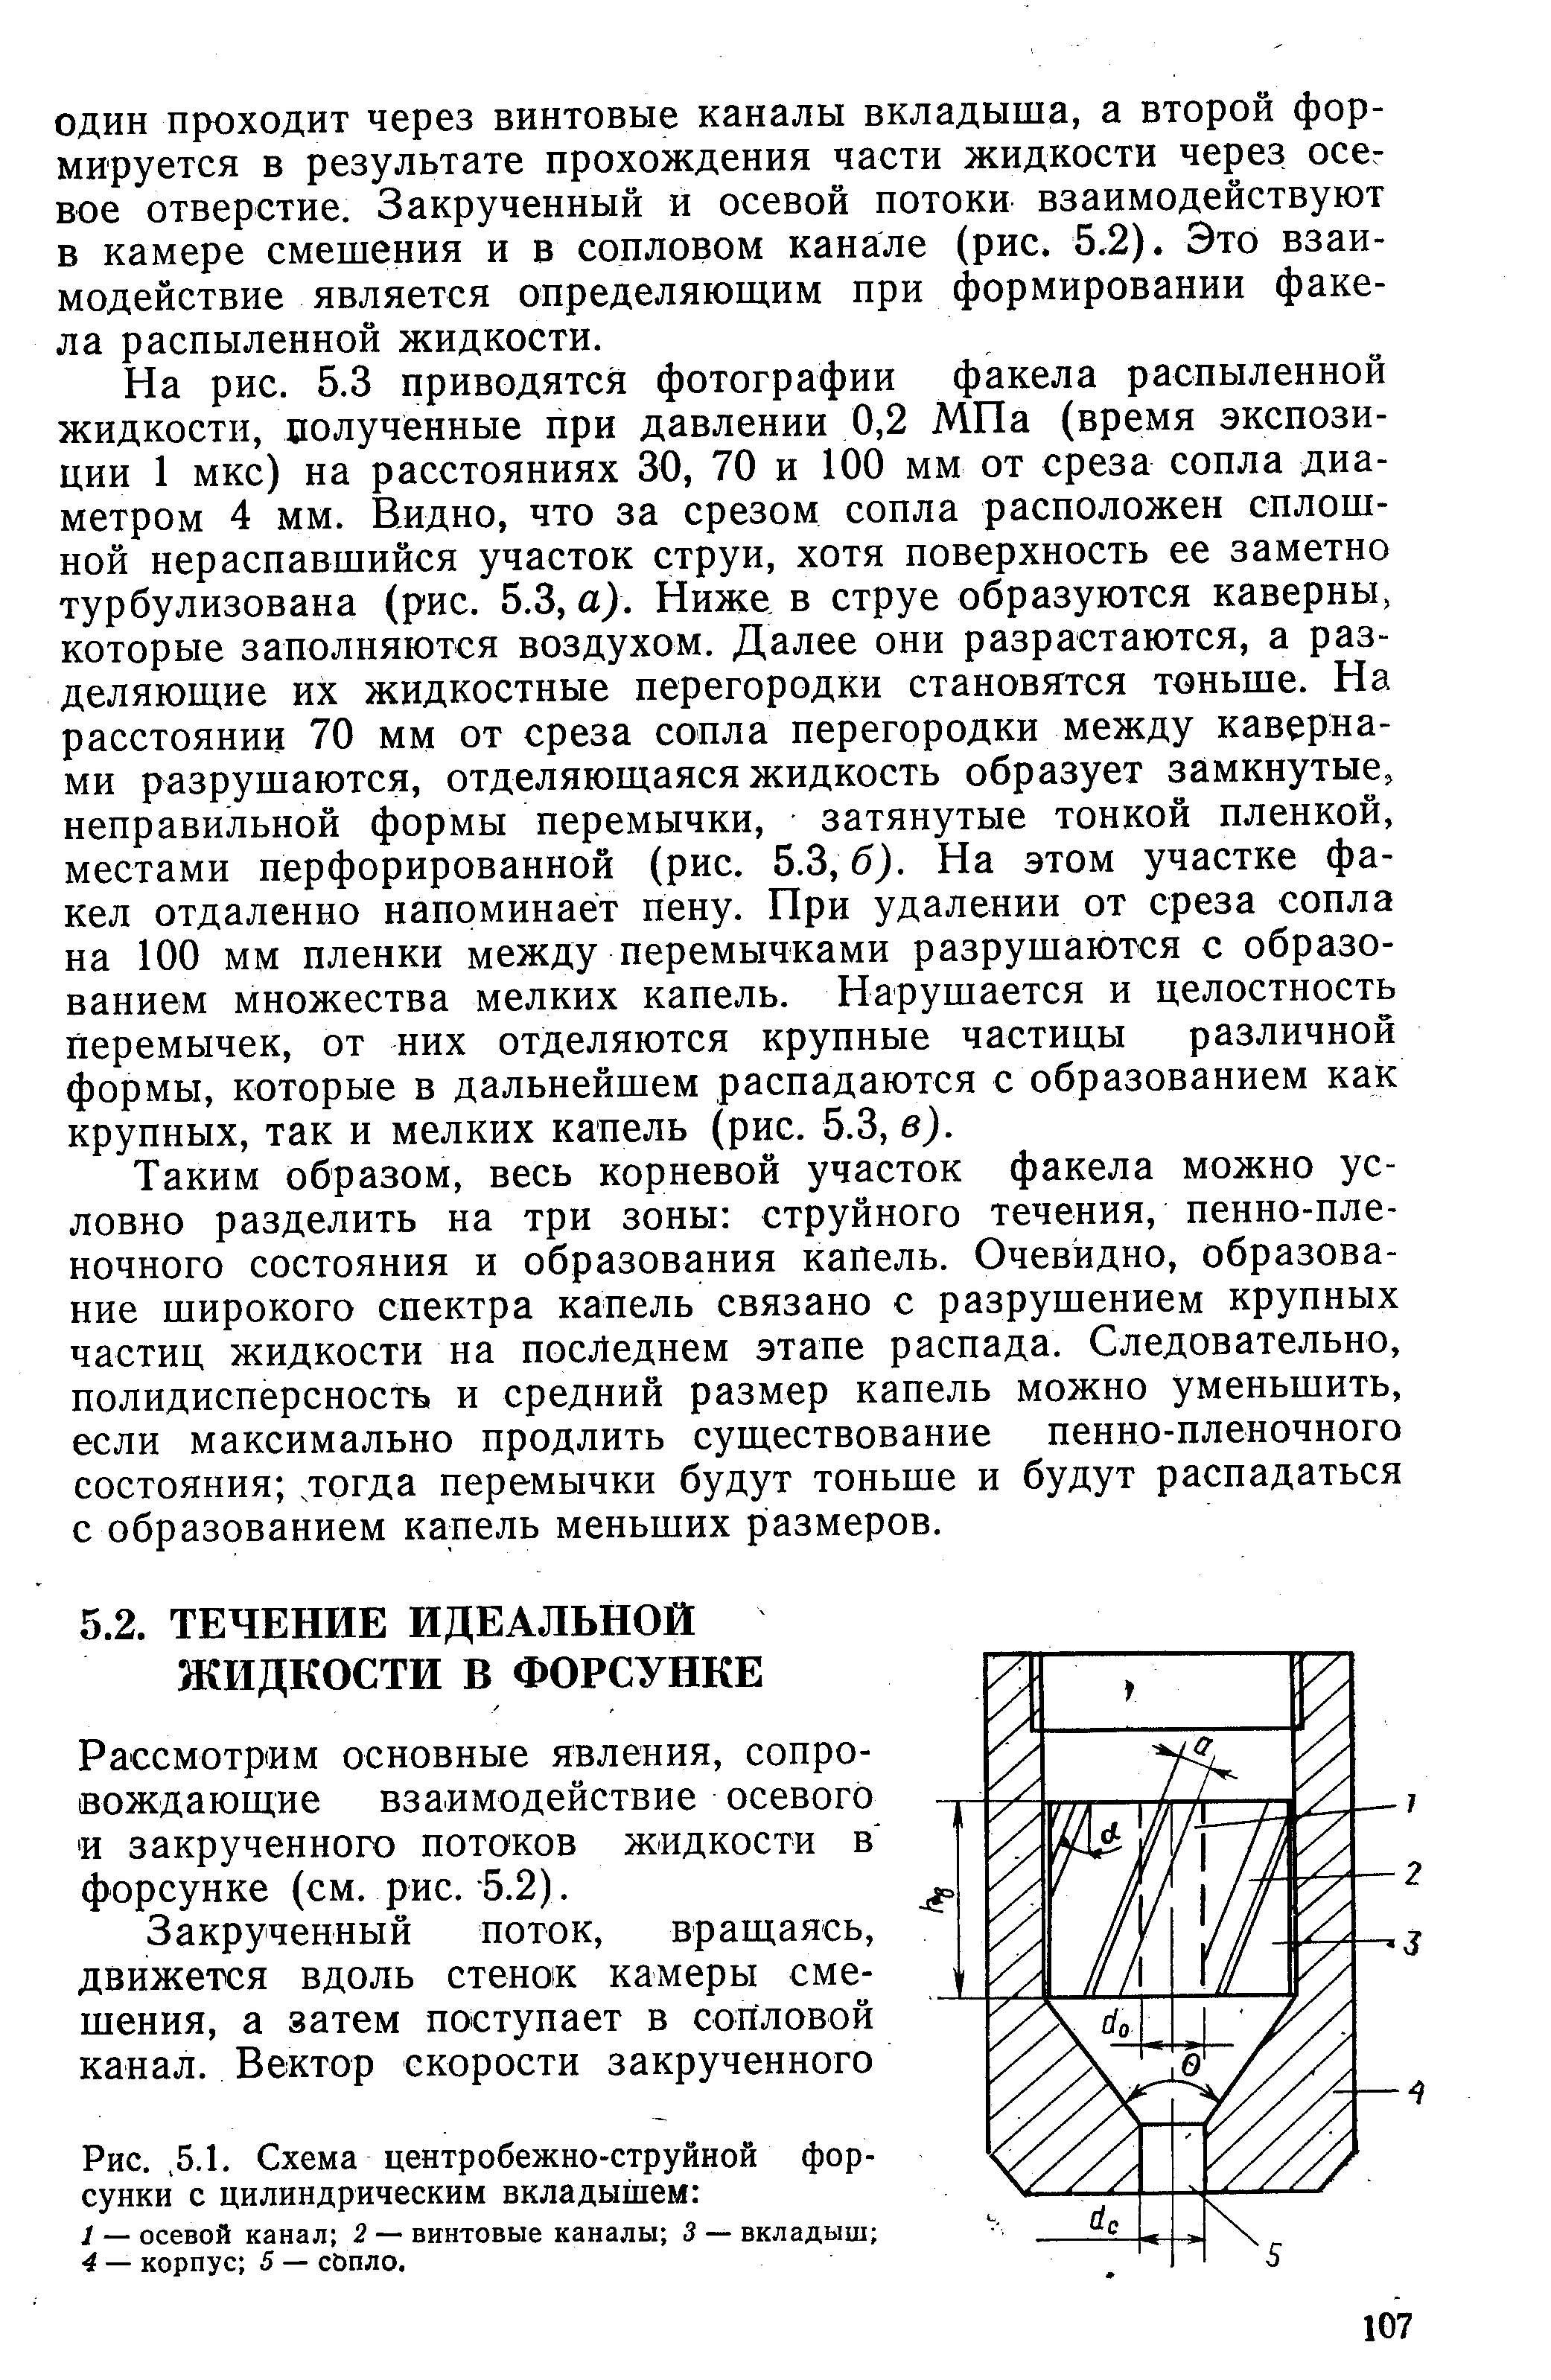 Рис., 5.1. Схема центробежно-струйной форсунки с цилиндрическим вкладышем 
